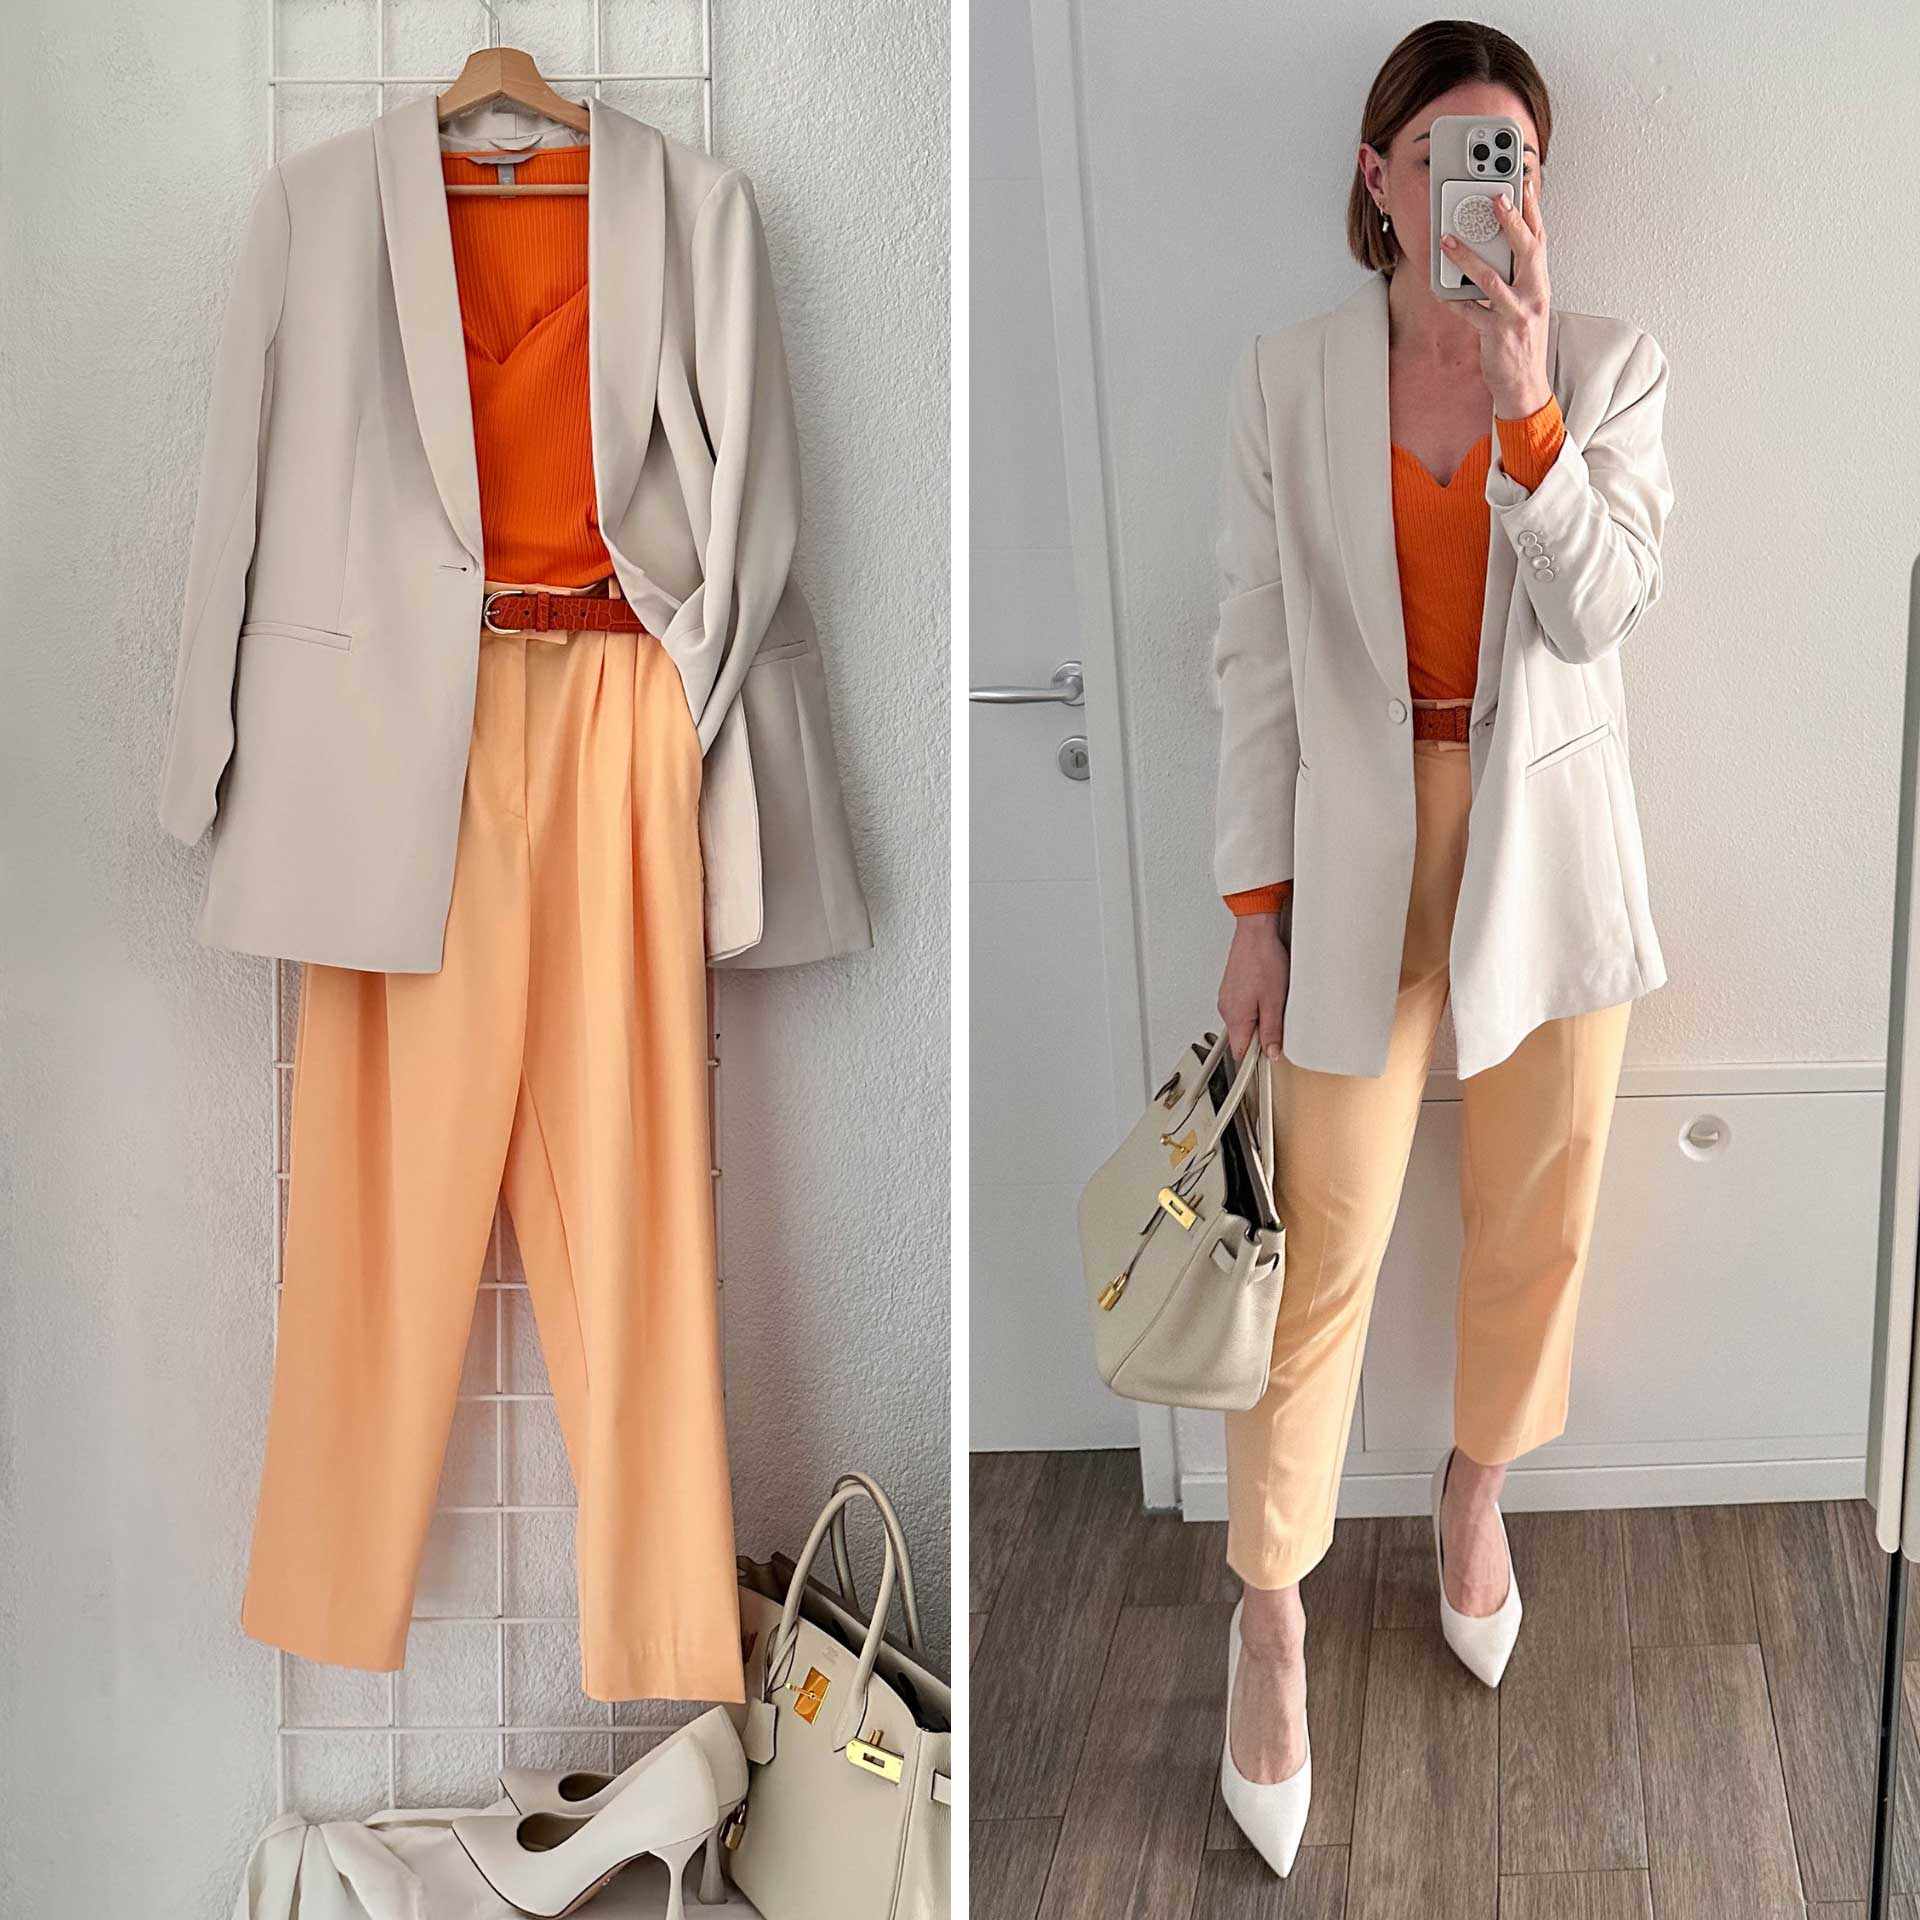 Entdecke Frühlingsoutfits, die deine Vorliebe für aktuelle Modetrends berücksichtigen! Style dich in apricotfarbener Hose, orangem Strickshirt und beigem Blazer. 4 weitere Outfit-Ideen findest du am Blog.